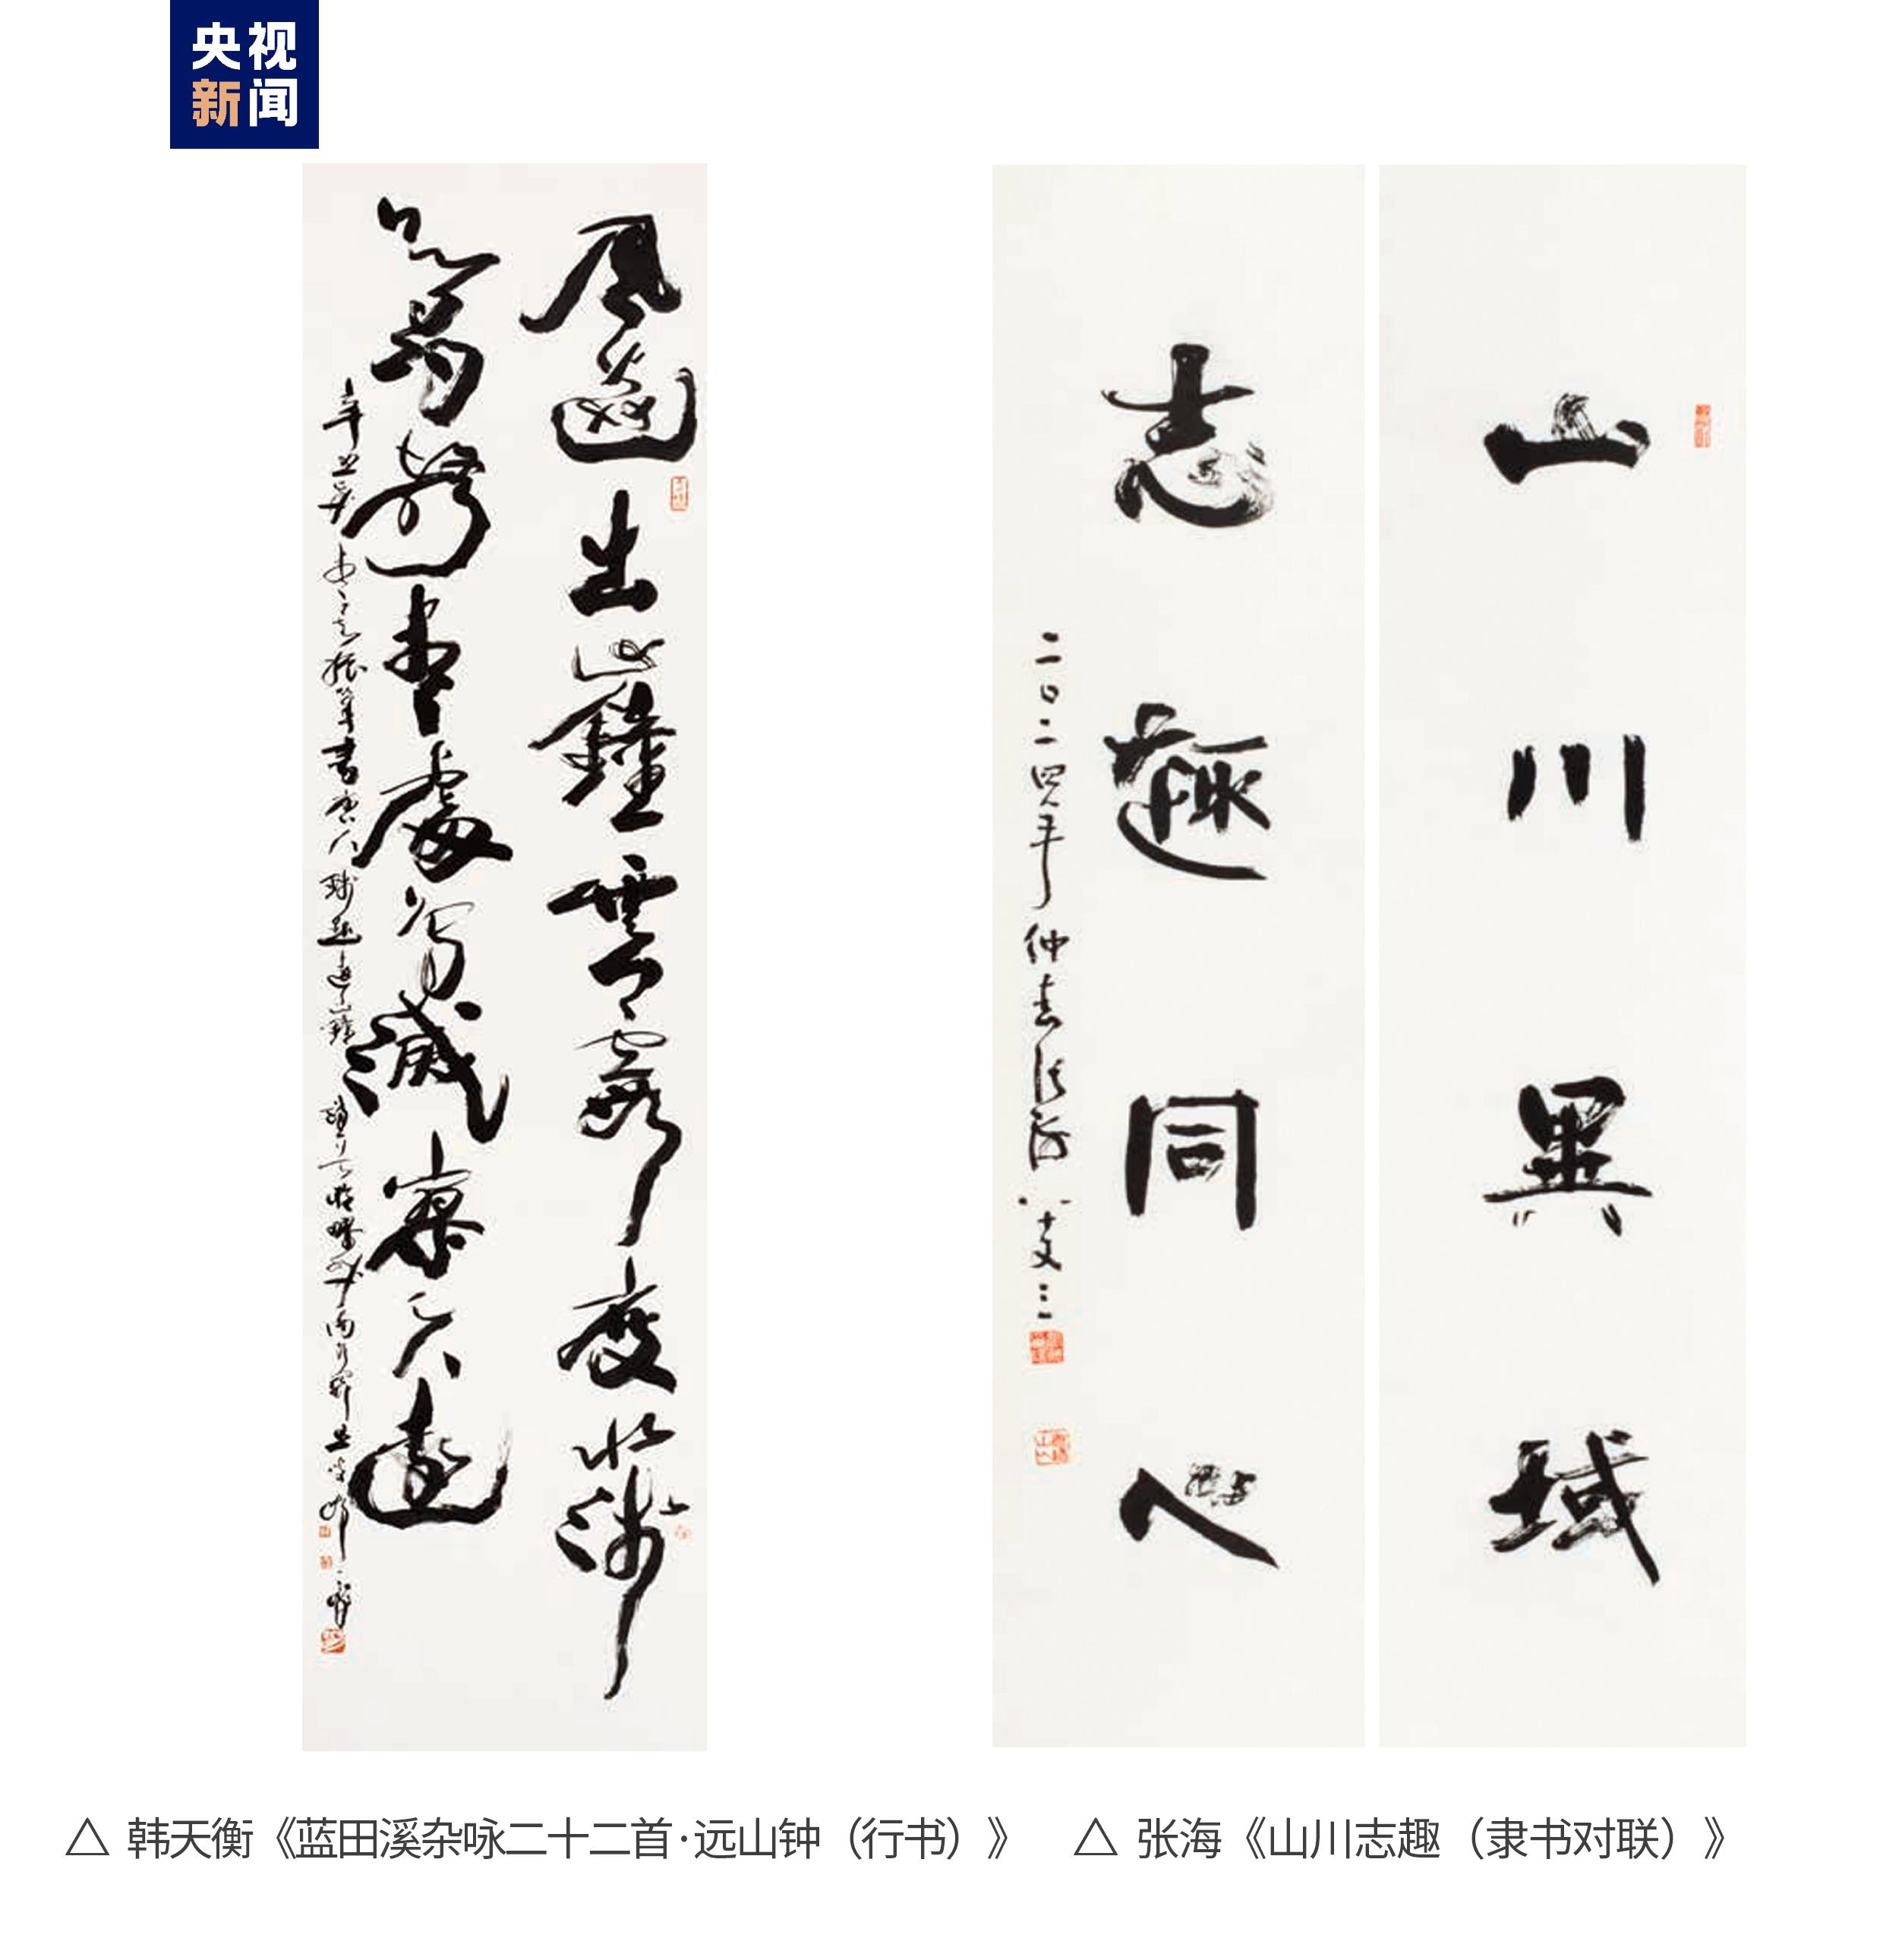 书法之魂！“从北京到巴黎——中法艺术家奥林匹克行”中国艺术大展书法作品展示汉字之美